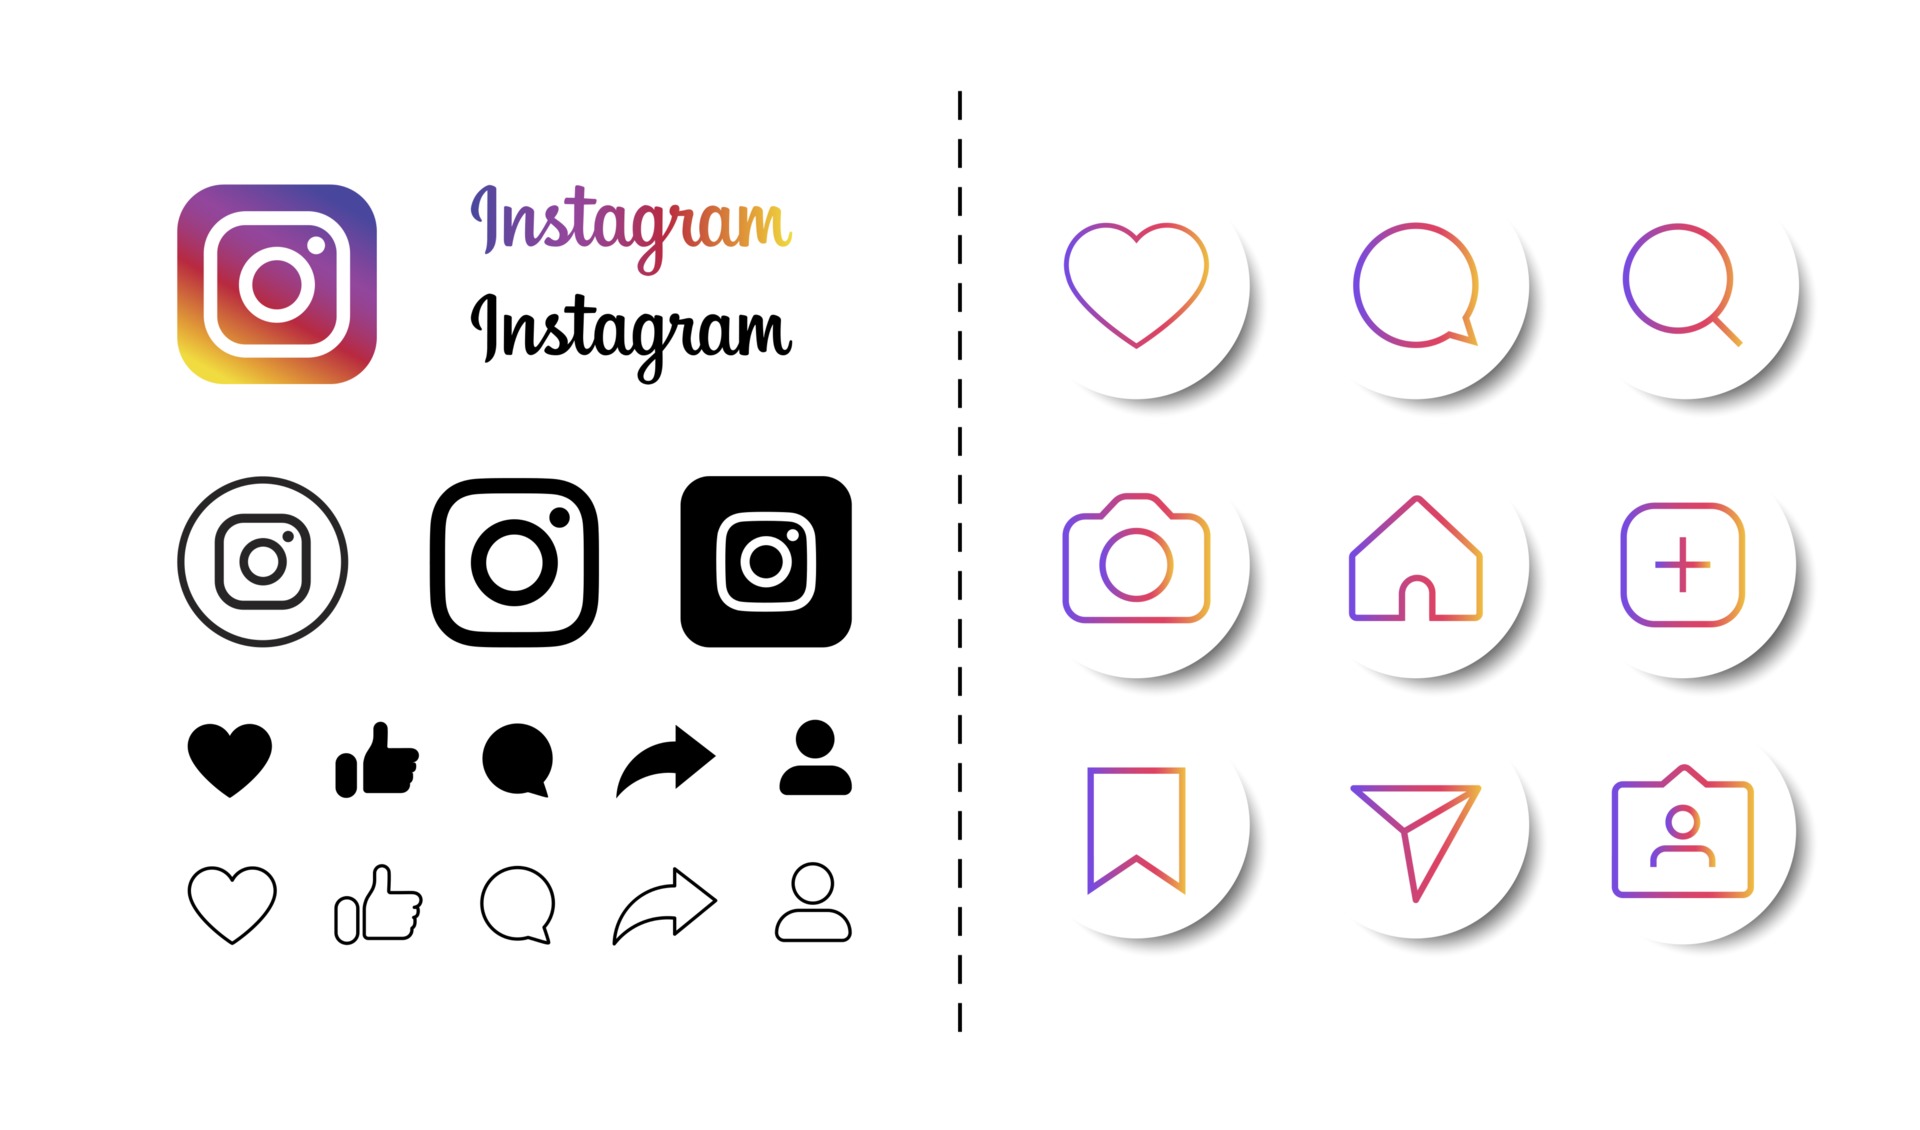 Với bộ icon Instagram Vector, bạn sẽ có những biểu tượng hoàn hảo để thể hiện sự sáng tạo và phong cách của mình trên trang cá nhân của mình trên Instagram.